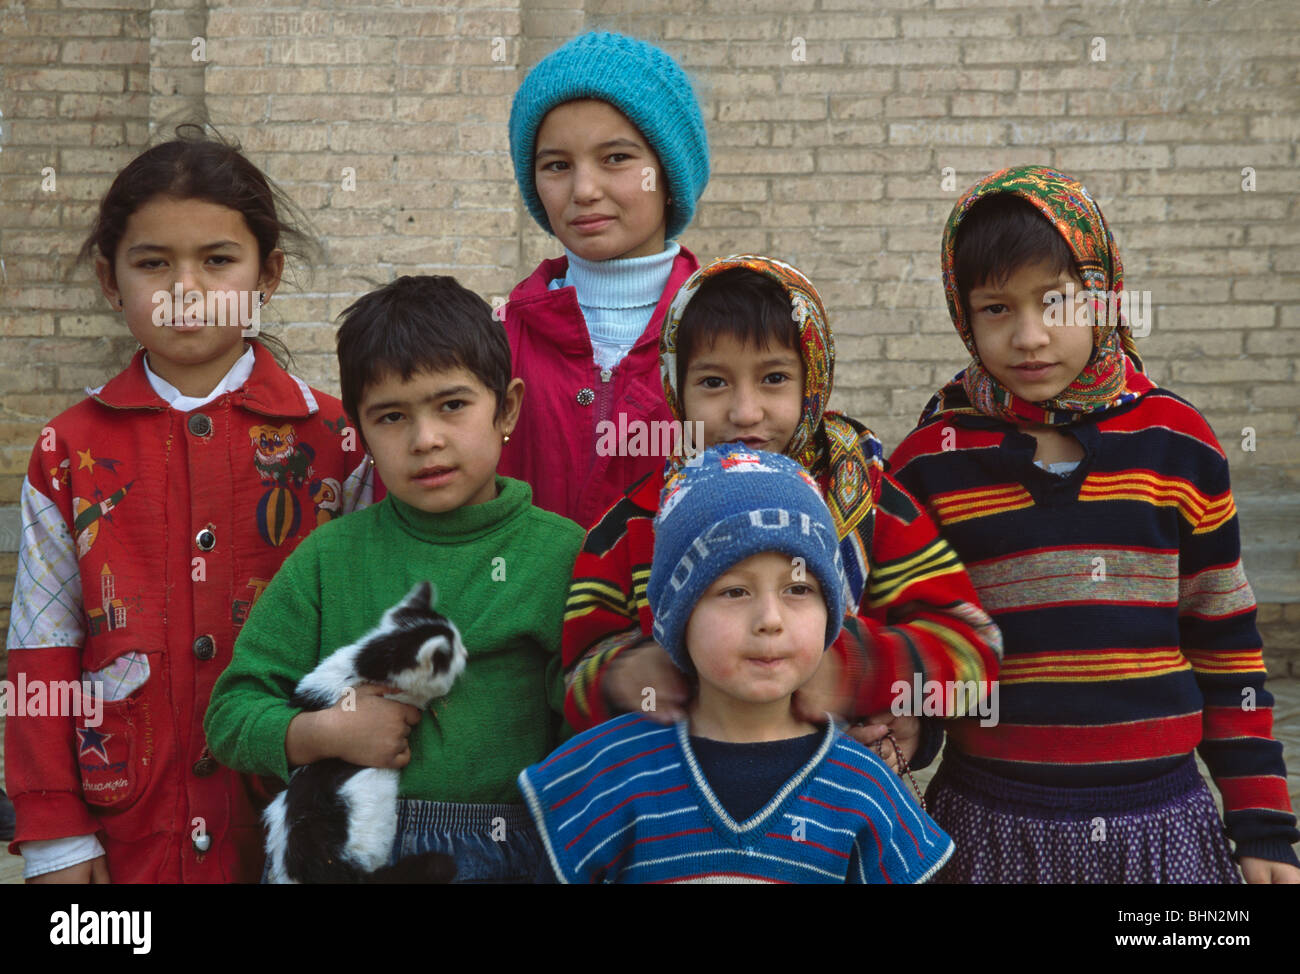 Uzbek children, Khiva, Uzbekistan Stock Photo